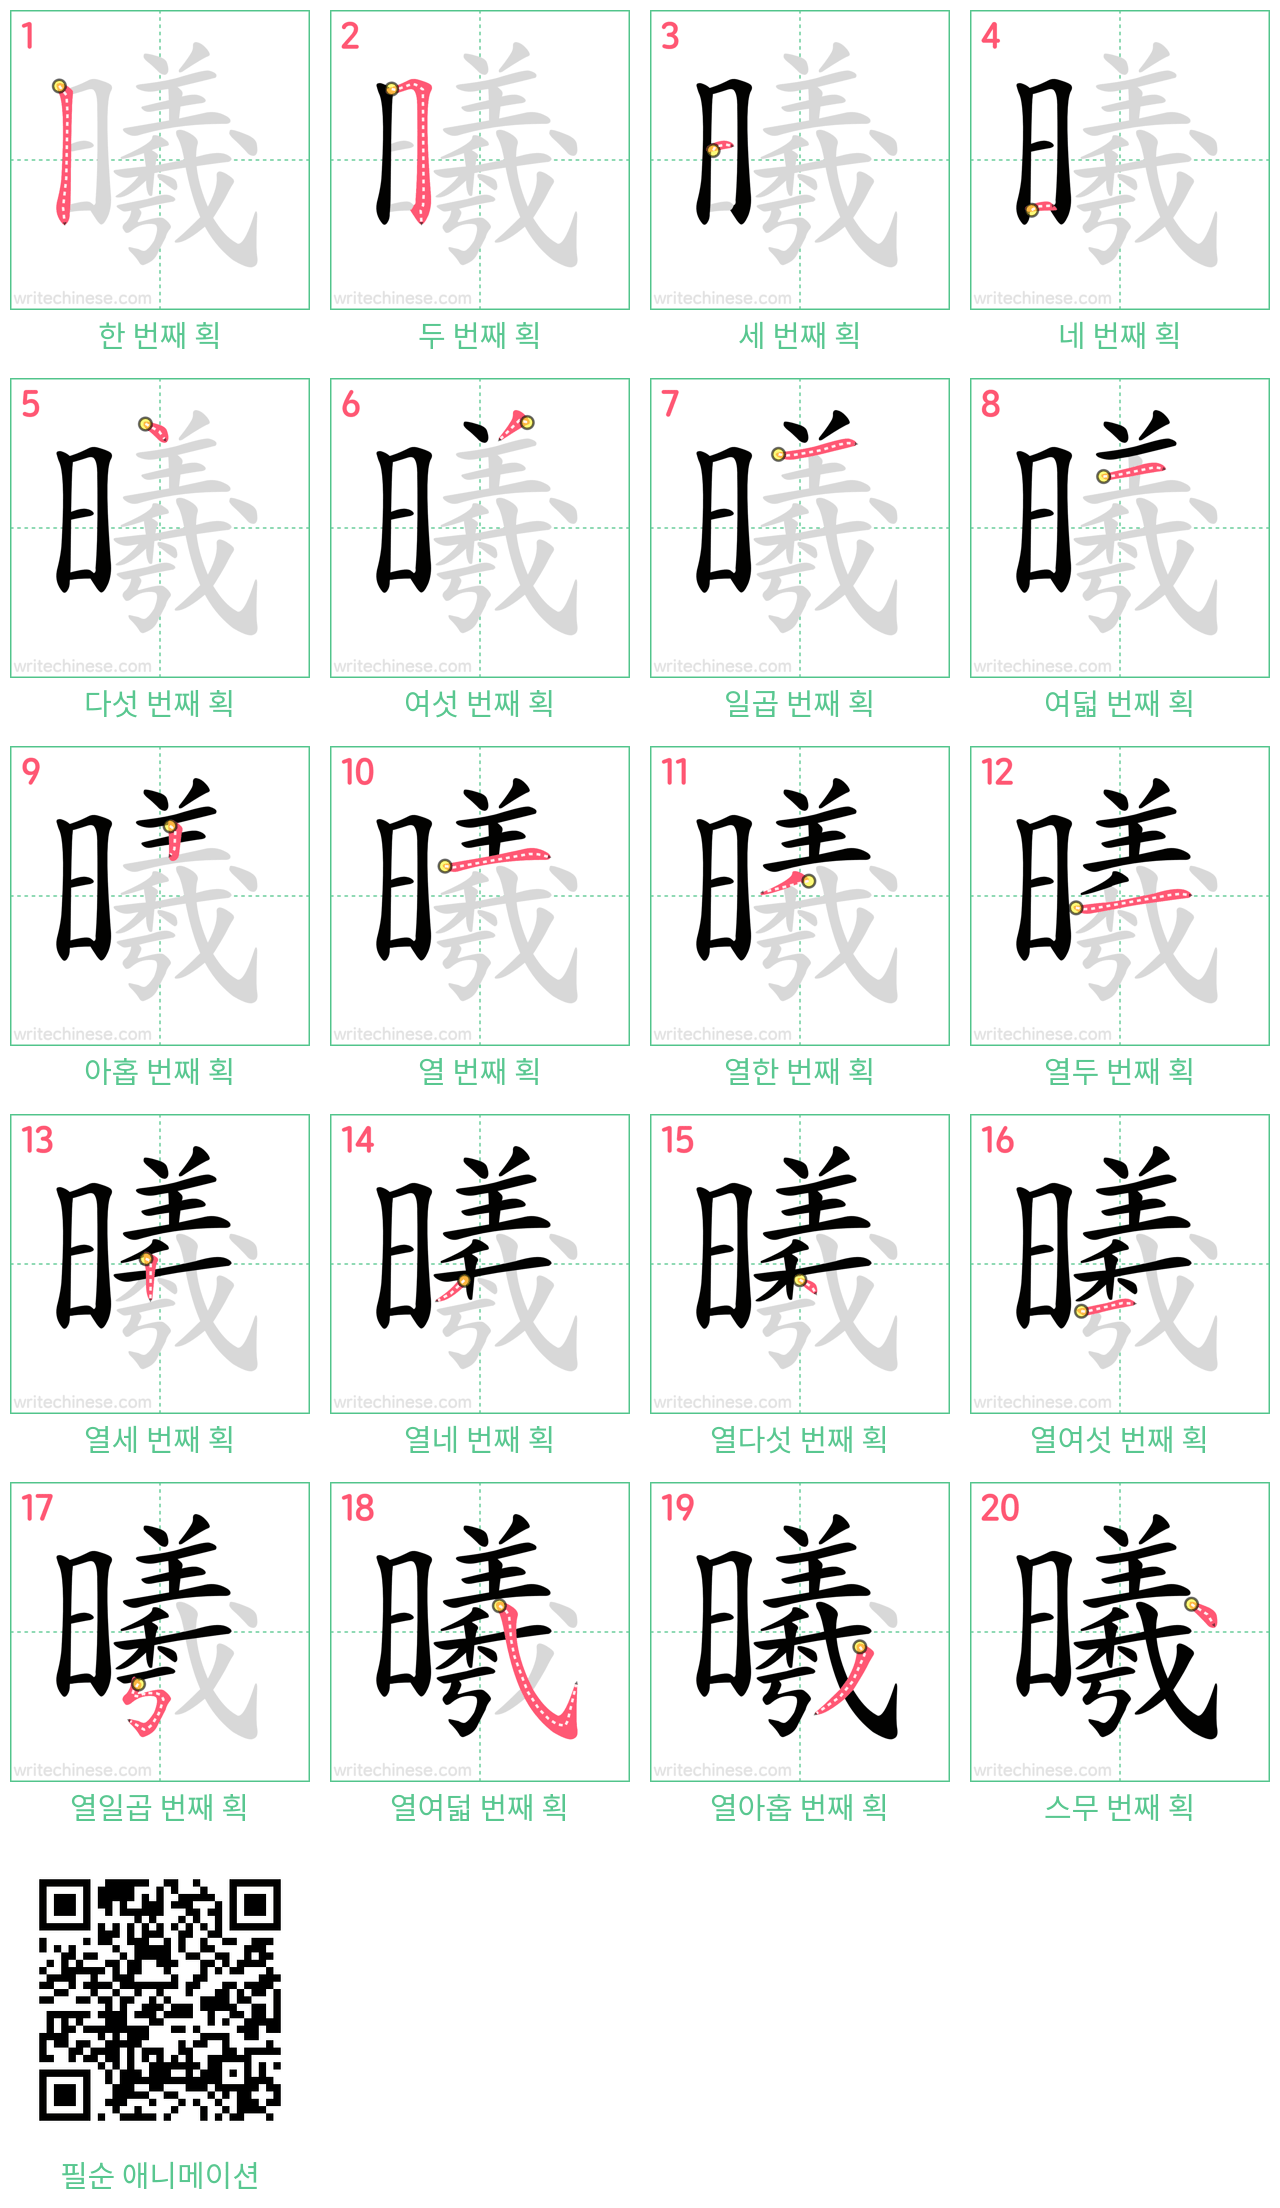 曦 step-by-step stroke order diagrams